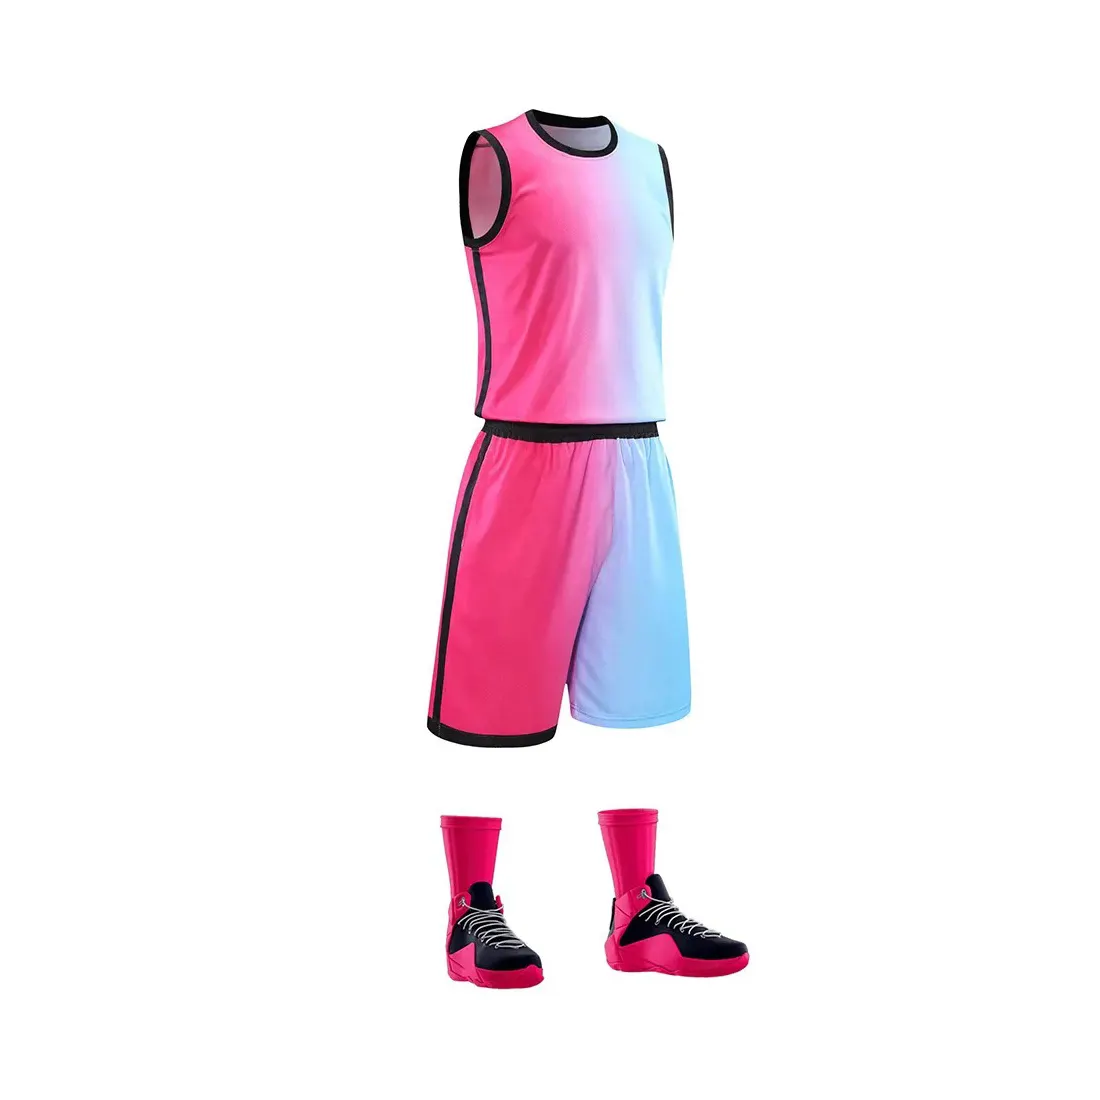 Barato Top 10 Mejor Simple Jersey Vestido de Baloncesto Con Jugador Personalizado Diseño Uniformes Fabricante